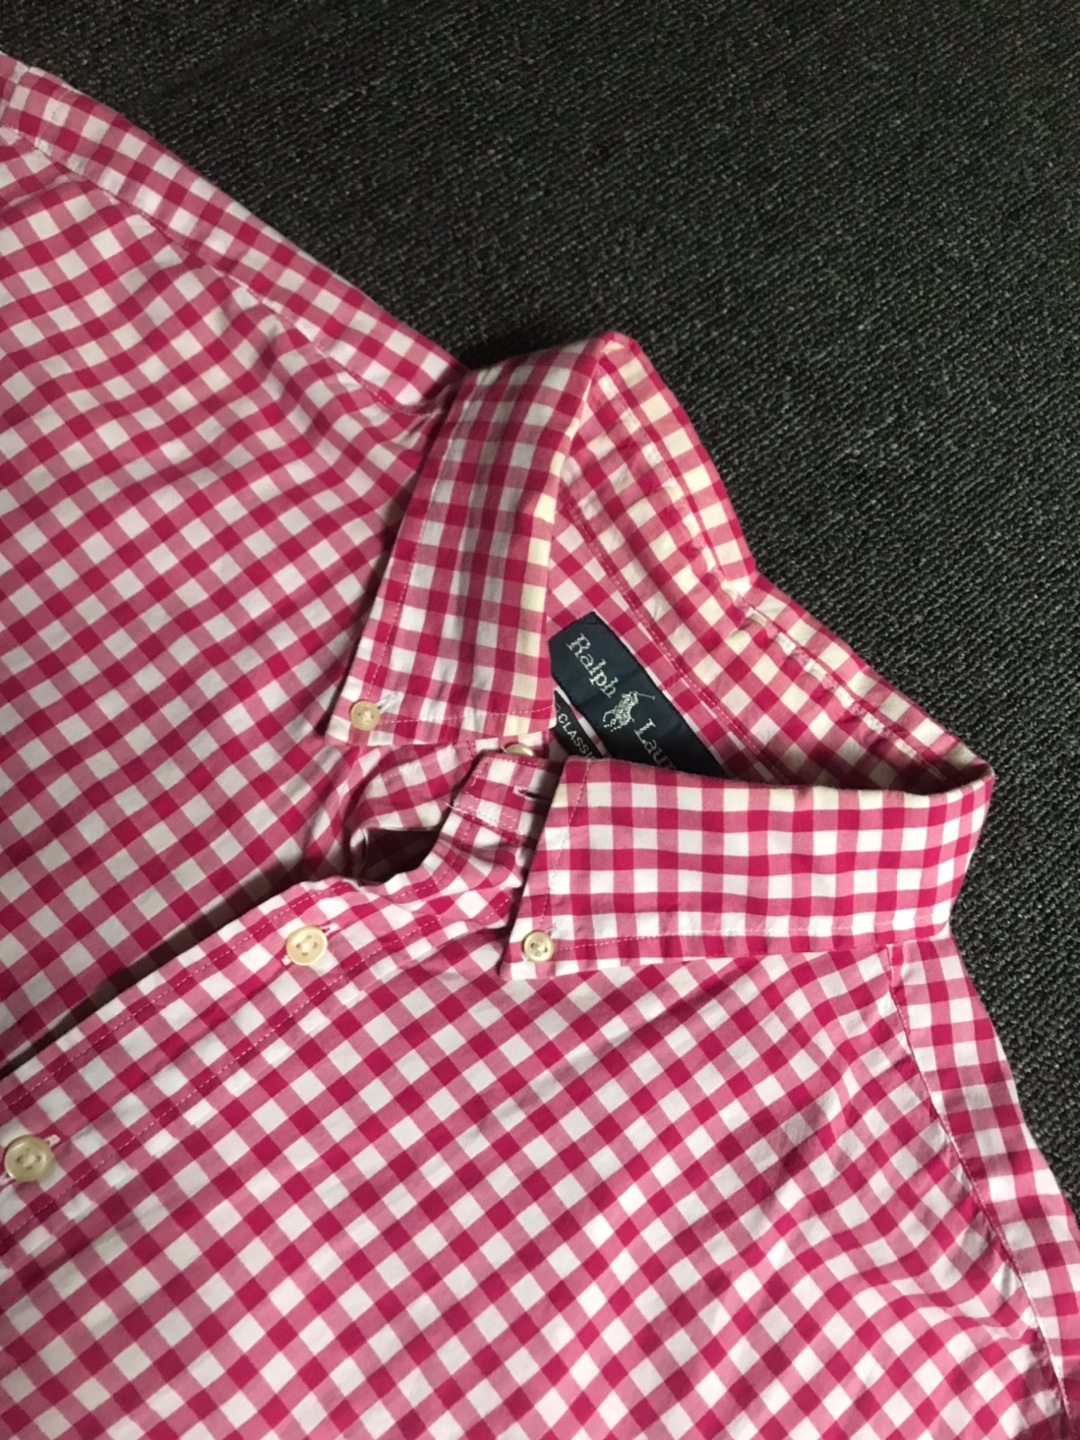 Polo RL lightweight cotton gingham bd shirt (XL size, ~105 추천)